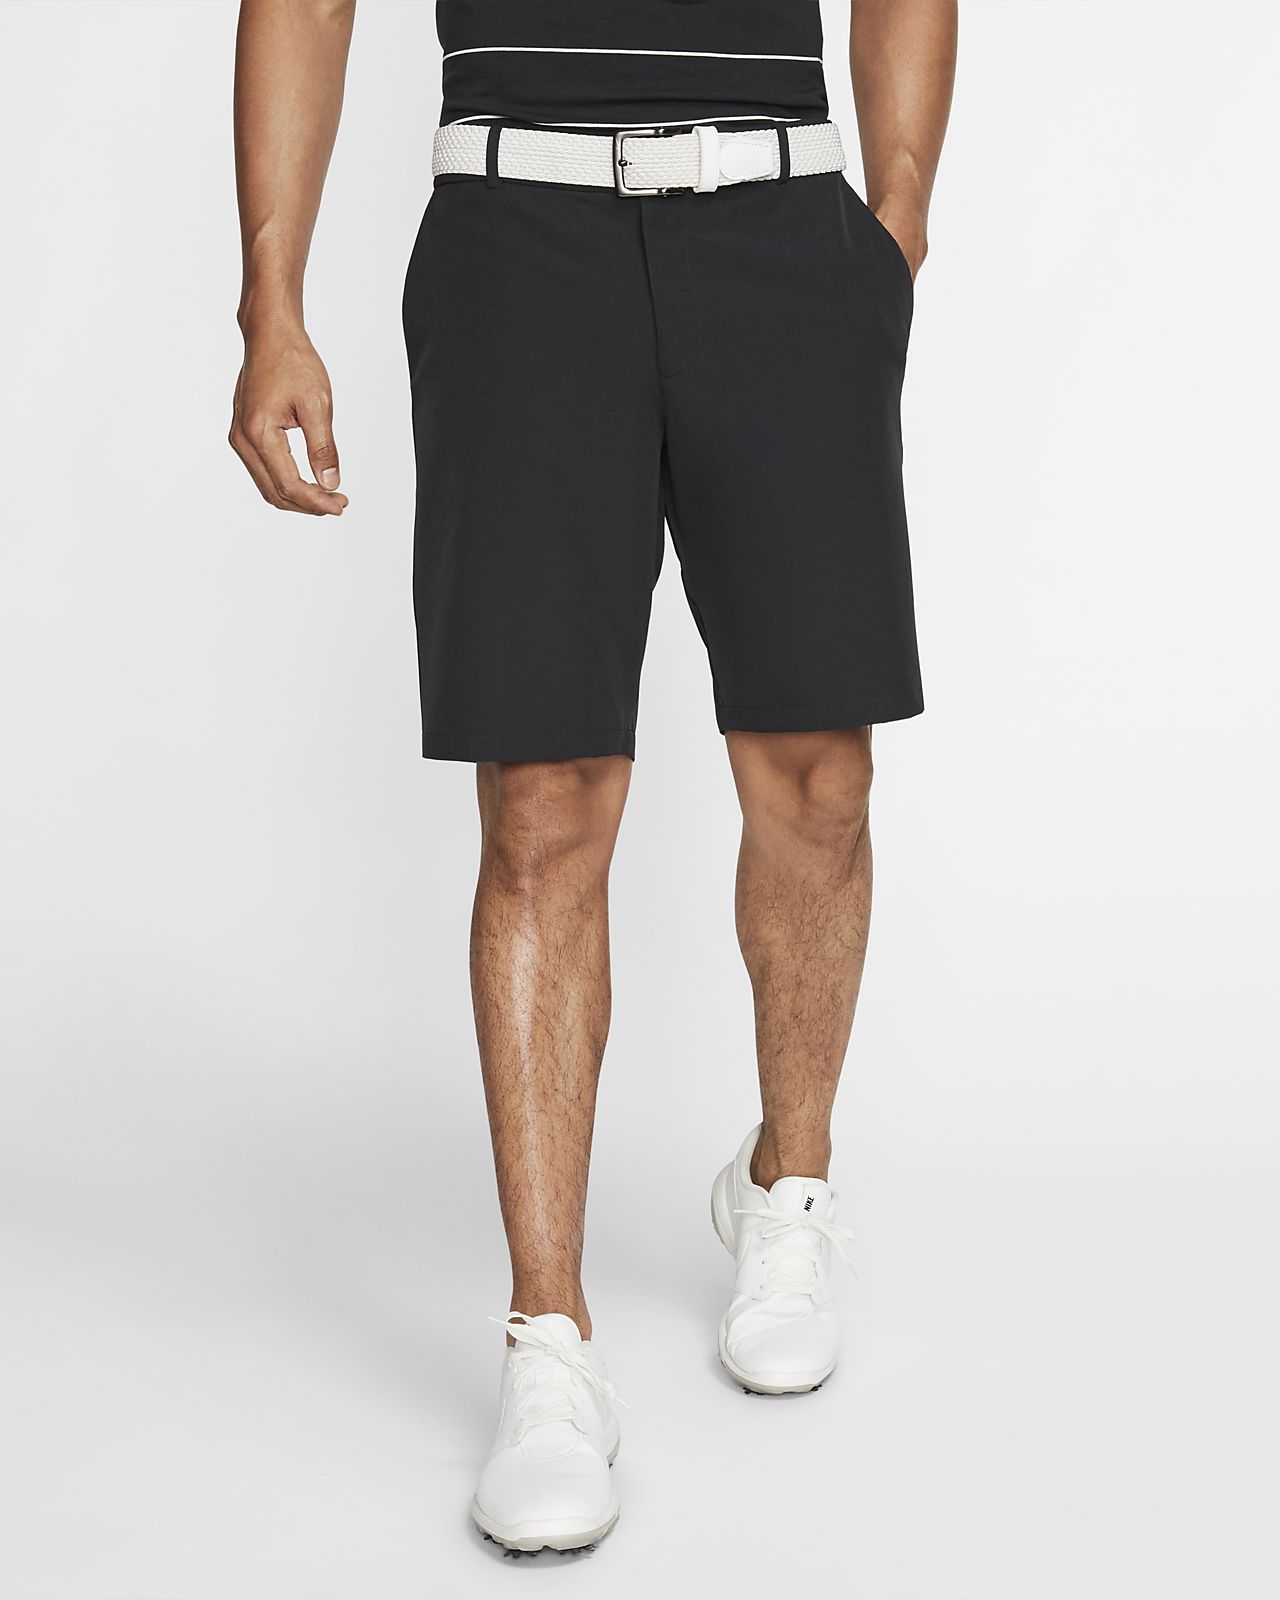 skinny golf shorts cheap online